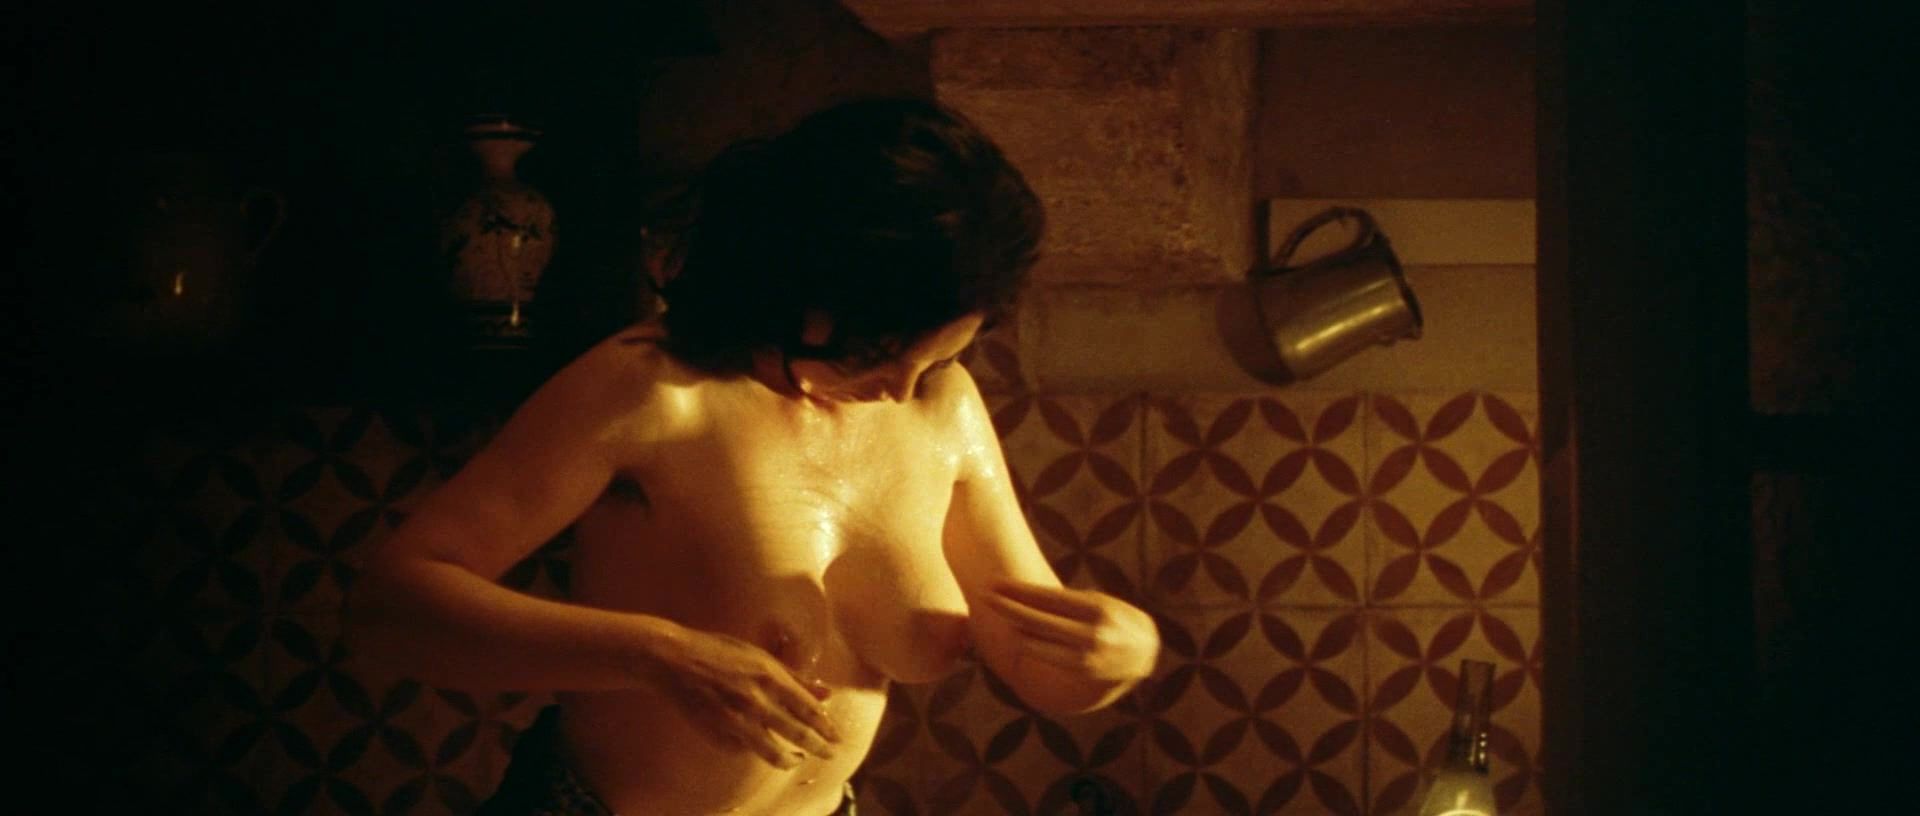 Tit Monica Bellucci nude (Malena UNCUT Scene) Play - 1